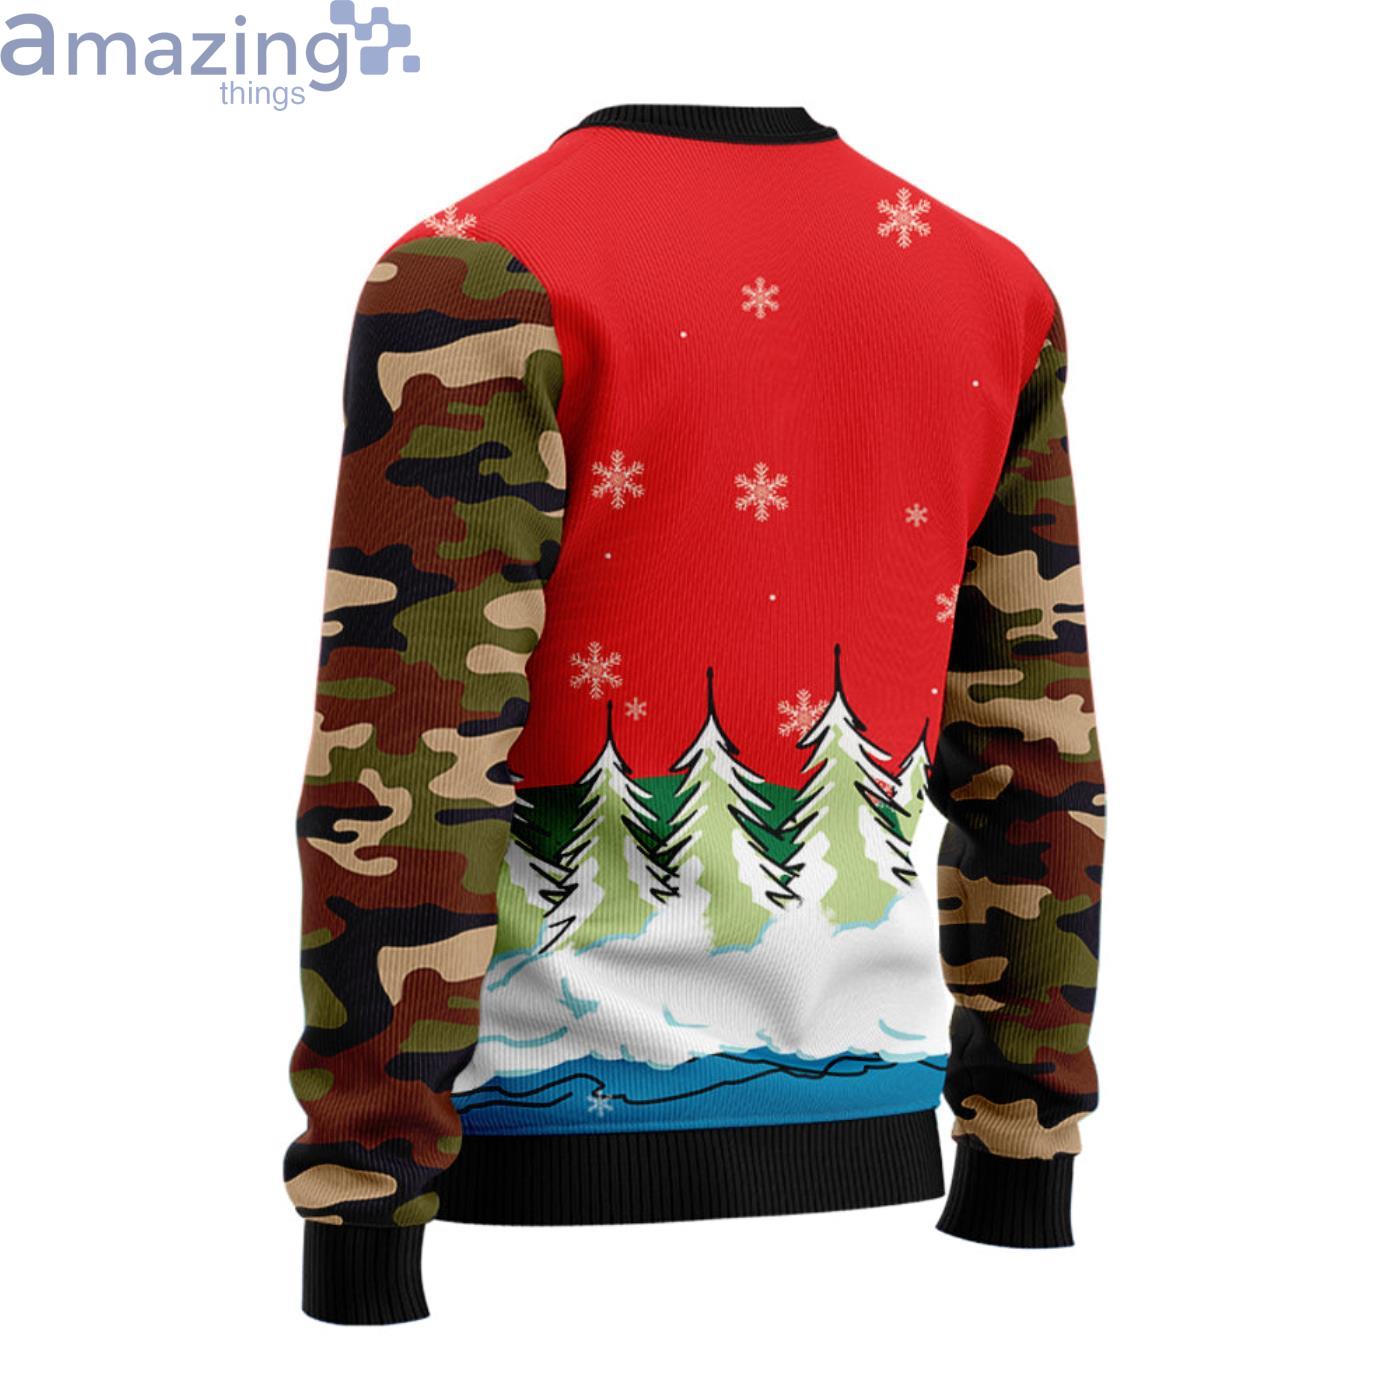 Hunting Santa Christmas Ugly Christmas Sweaters - Peto Rugs